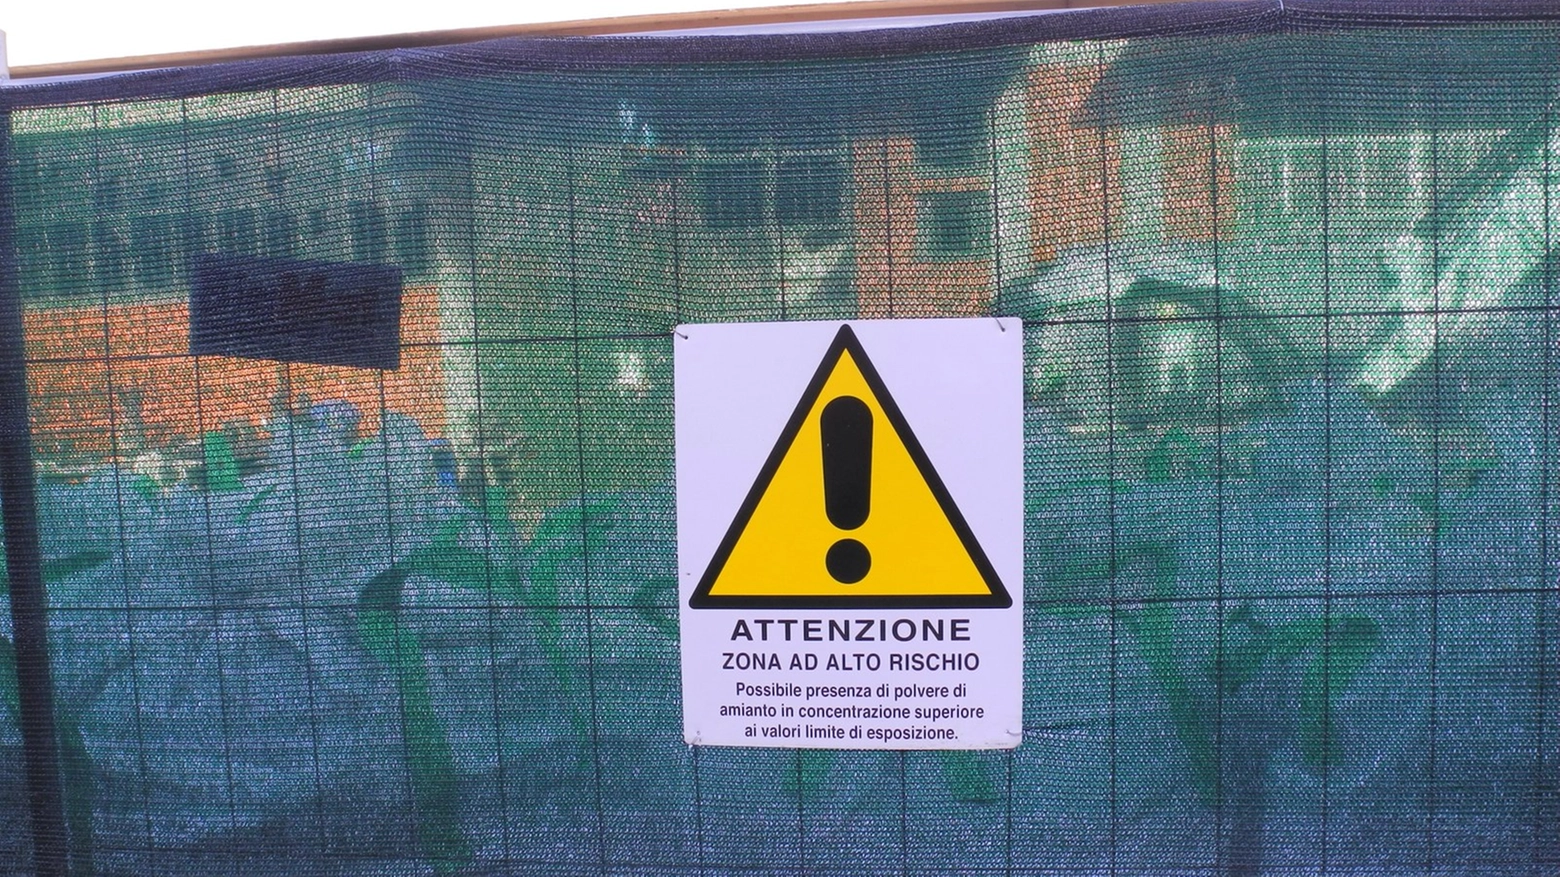 Sigilli a un'area contaminata da amianto: il cartello avverte del pericolo